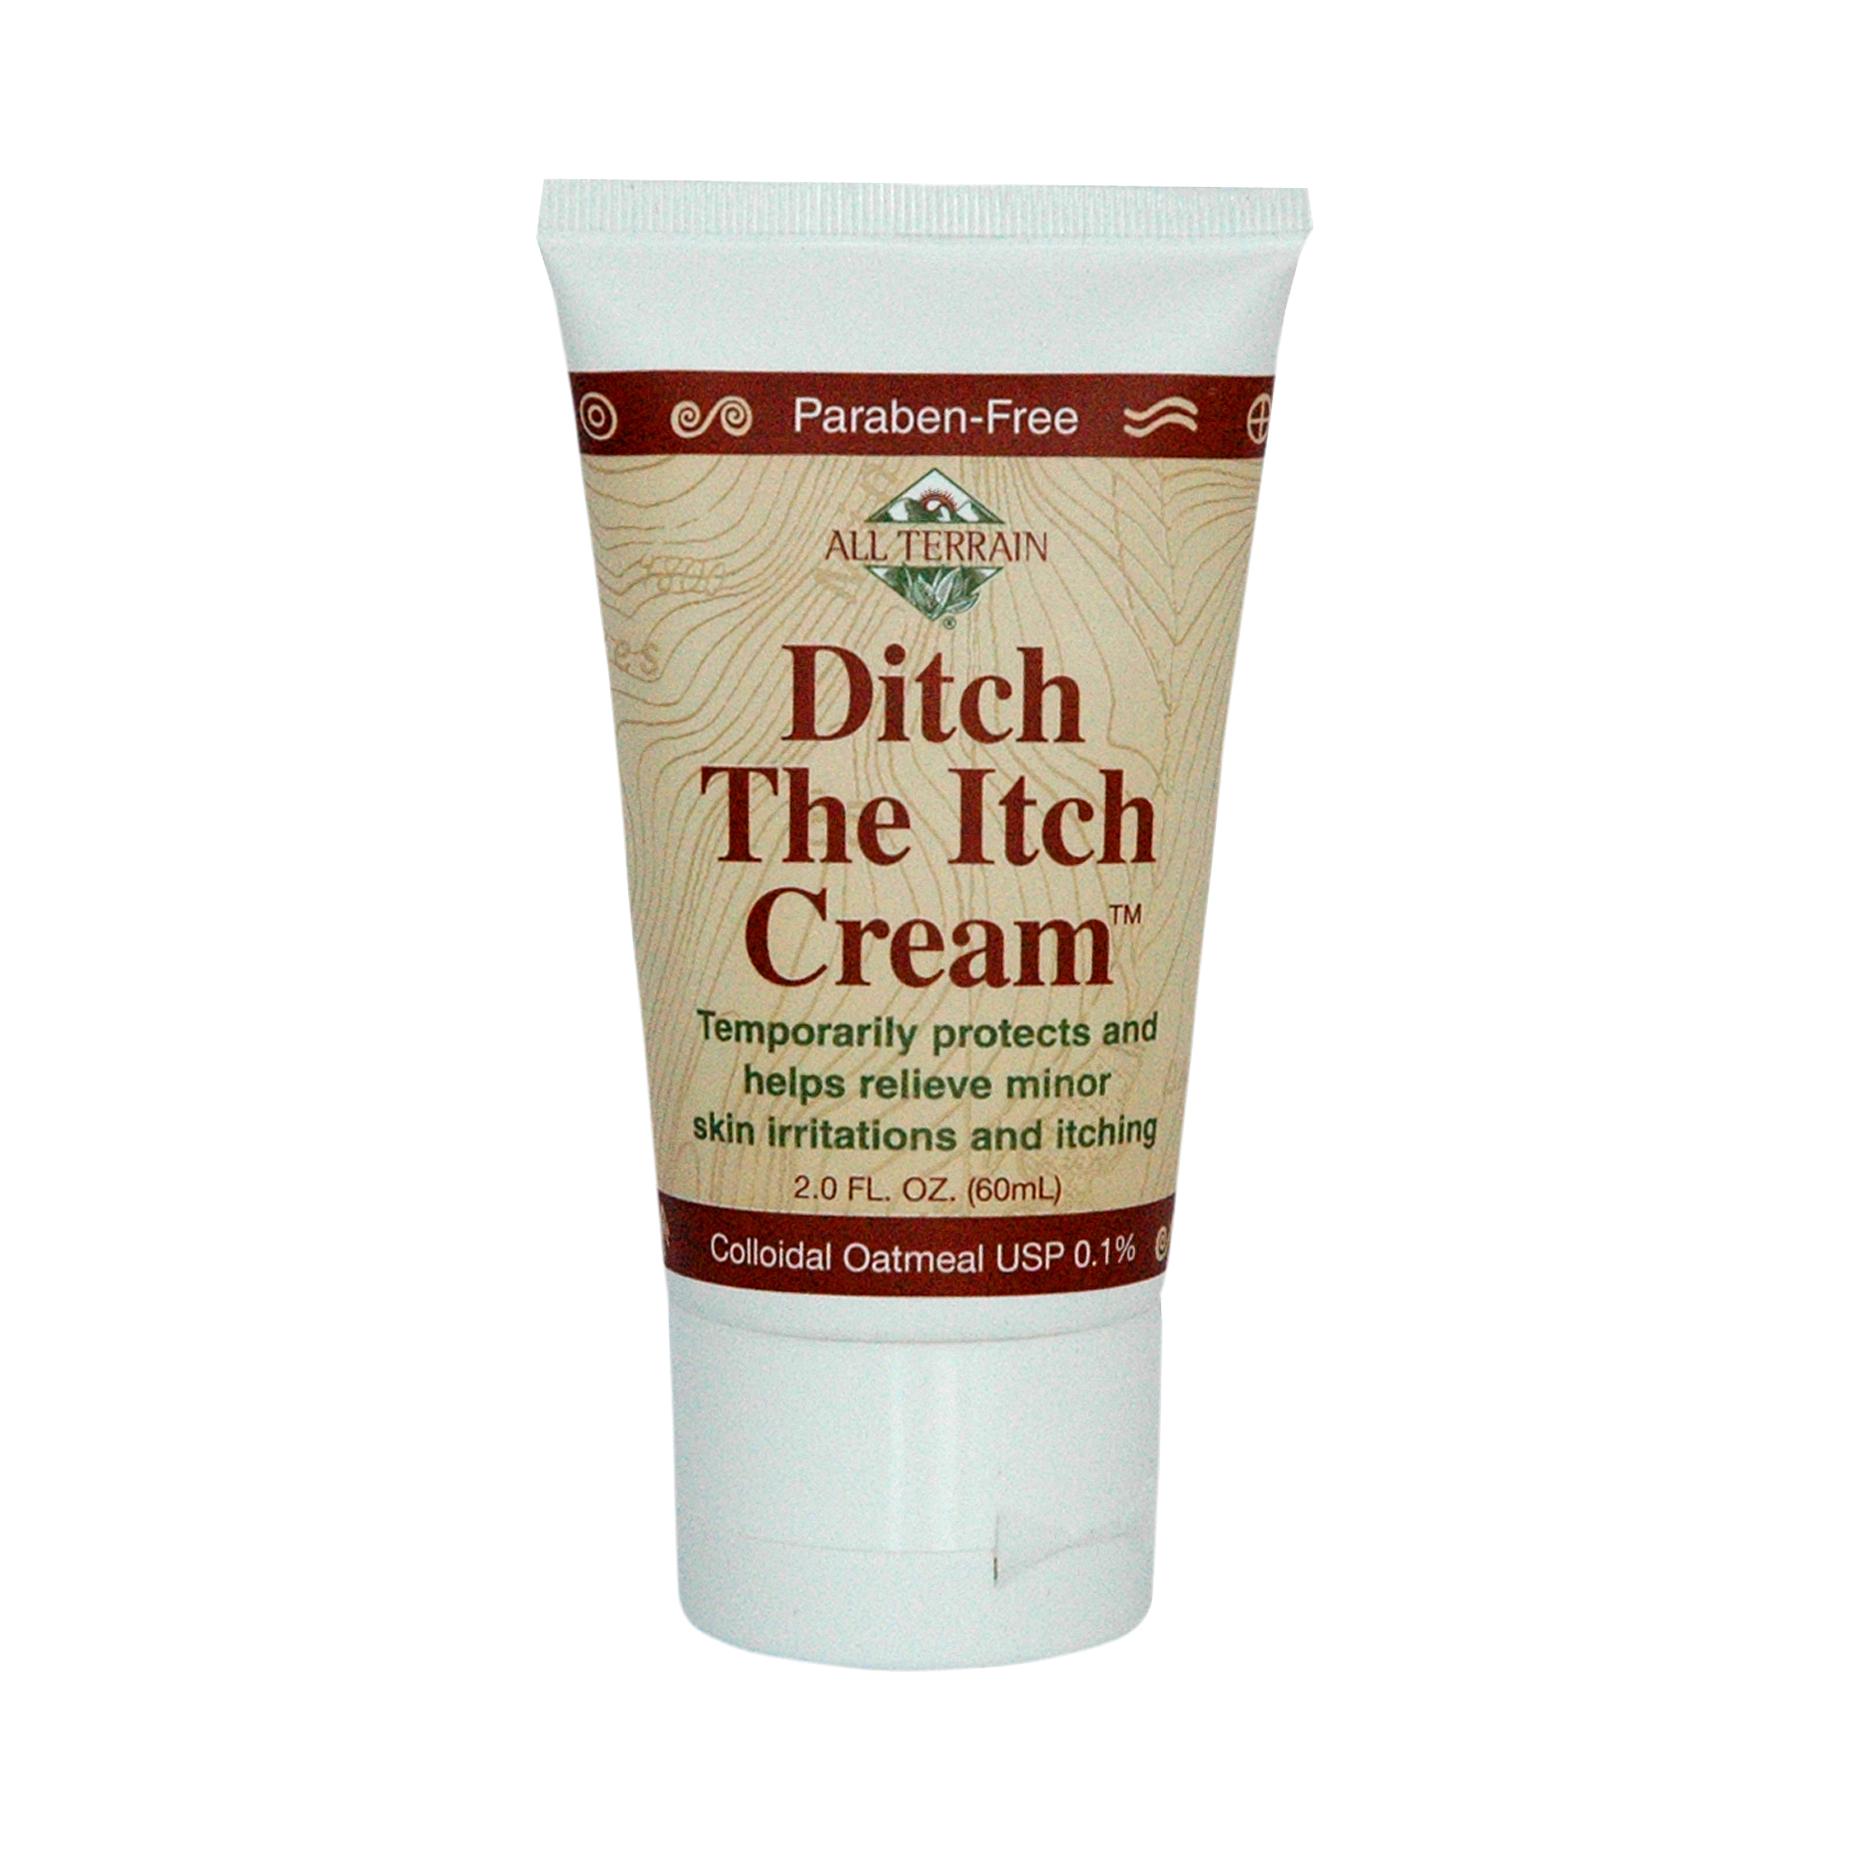  Ditch The Itch Cream